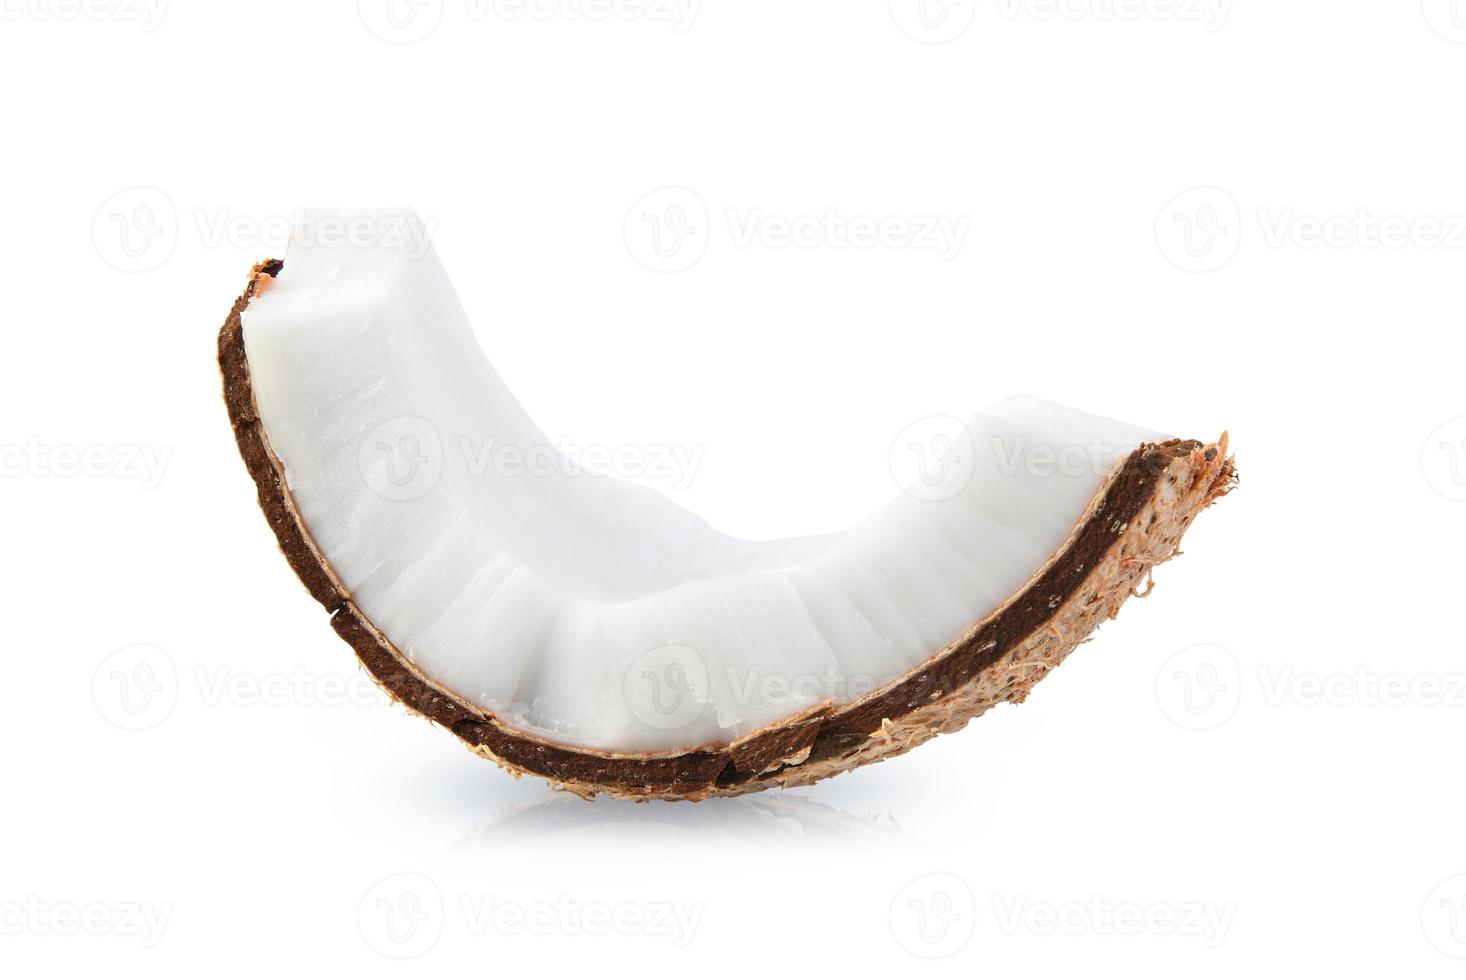 pedaços de coco isolados em um fundo branco. foto